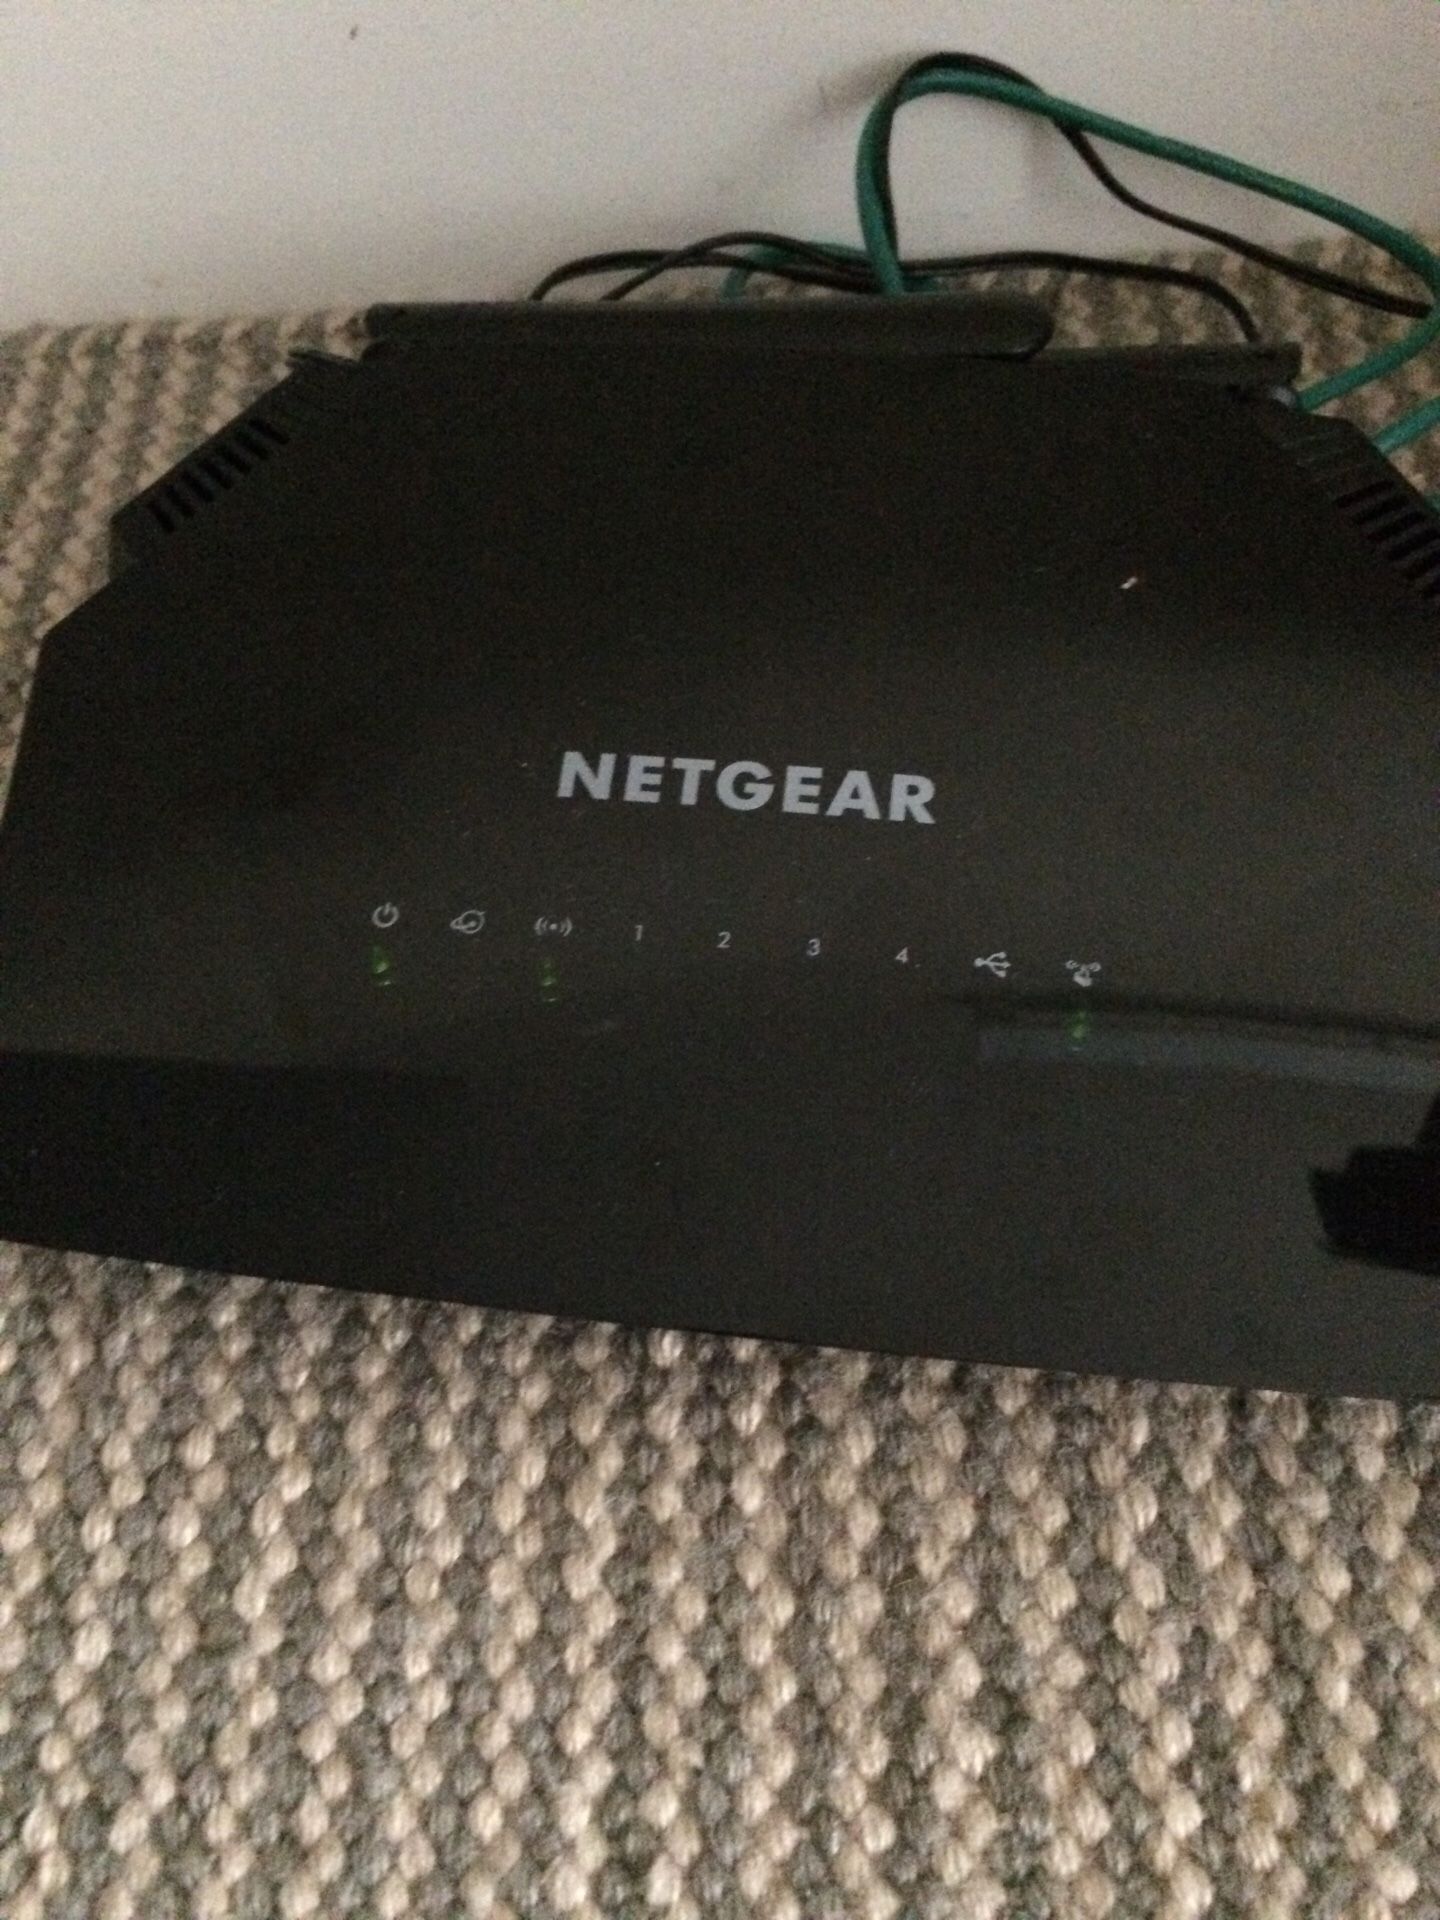 NETGEAR router